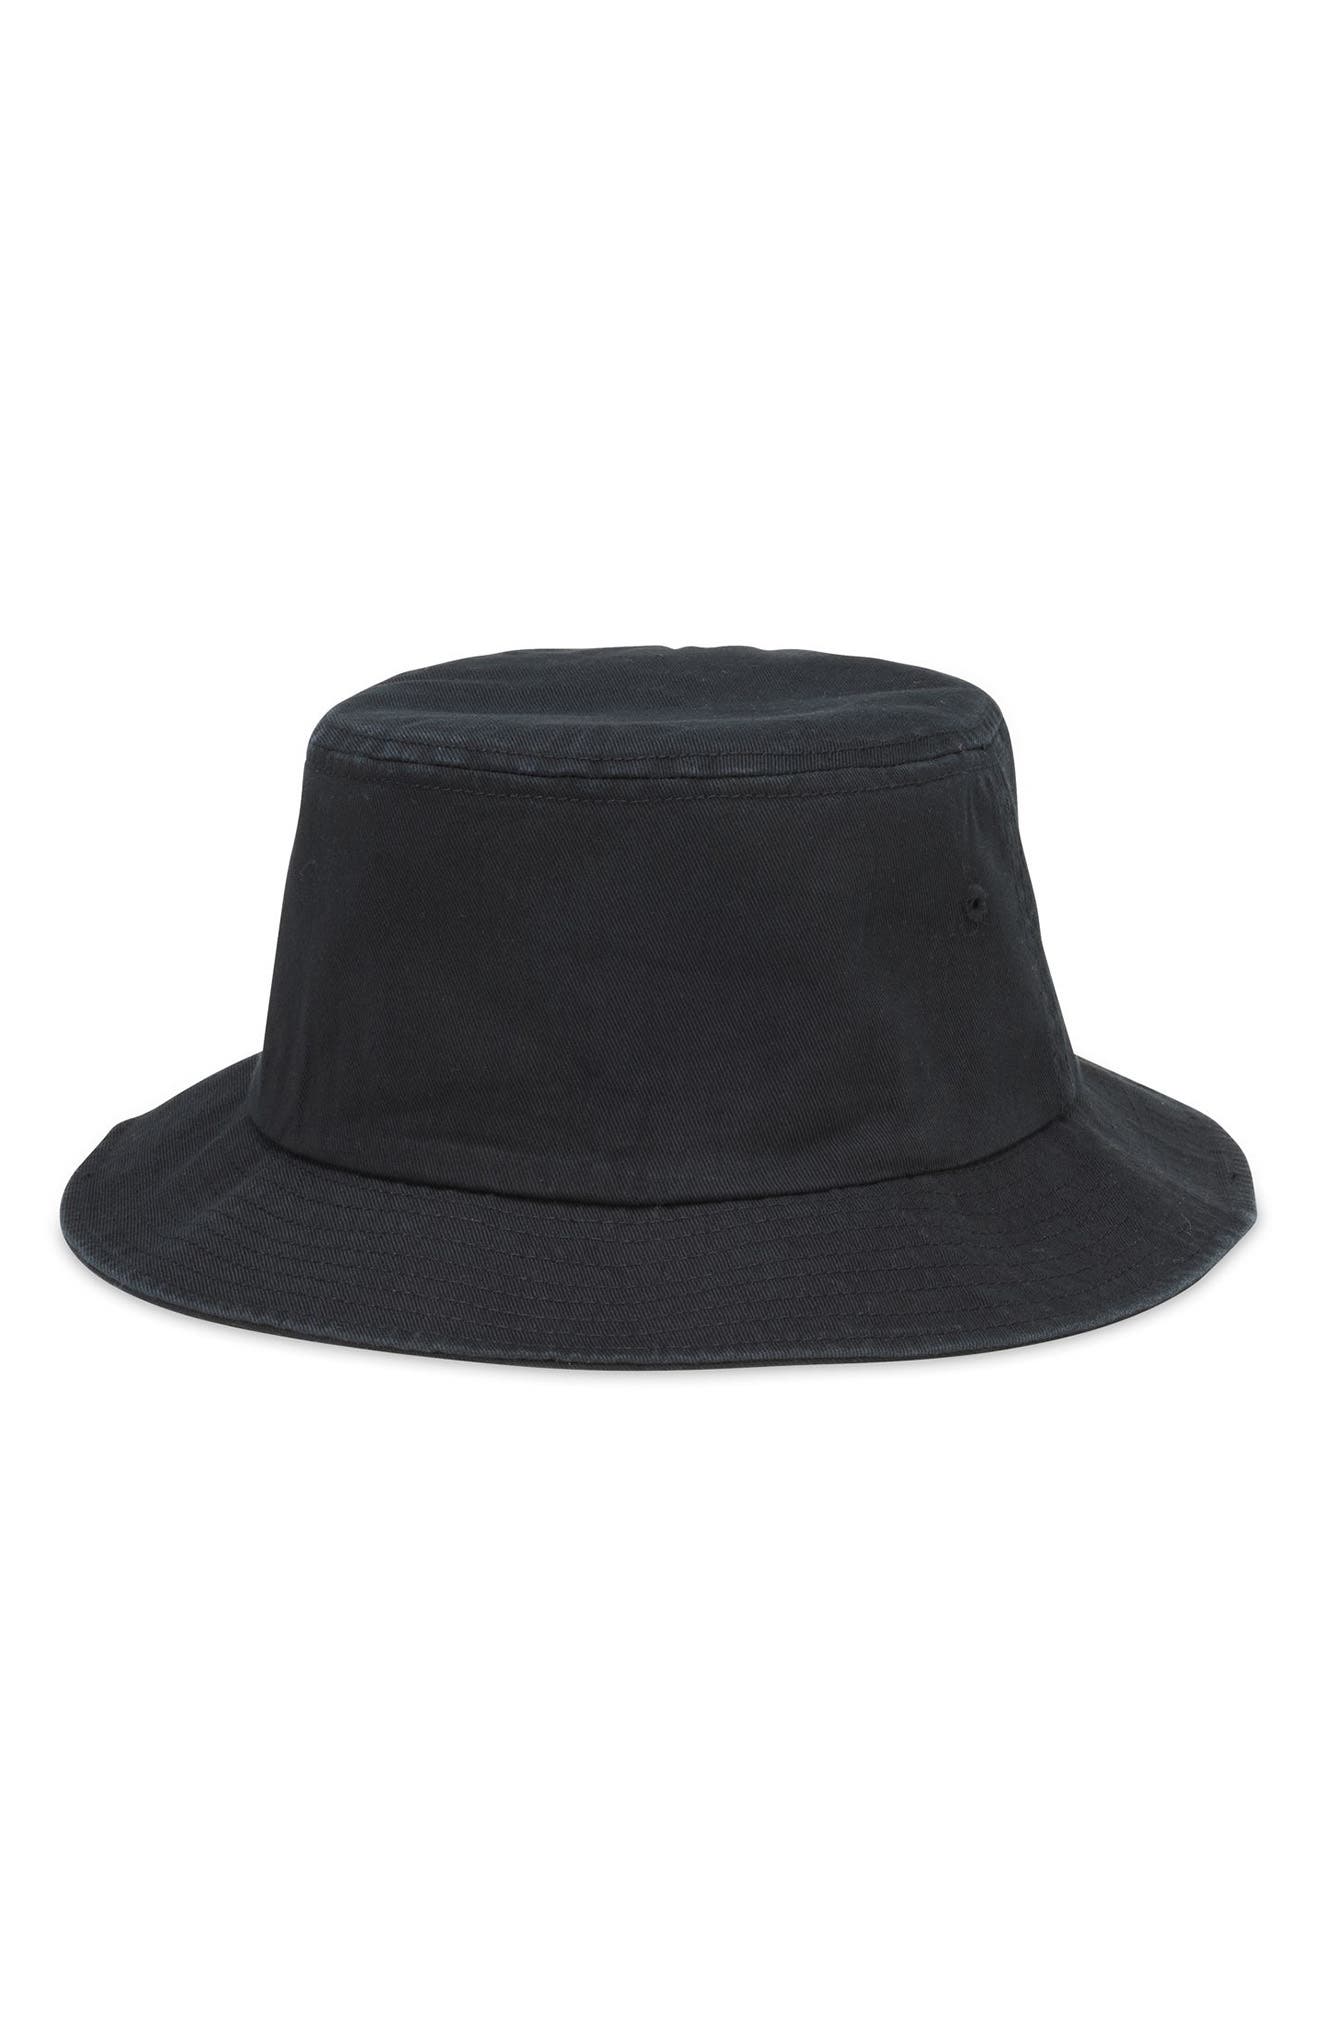 1950s Mens Hats | 50s Vintage Men's Hats